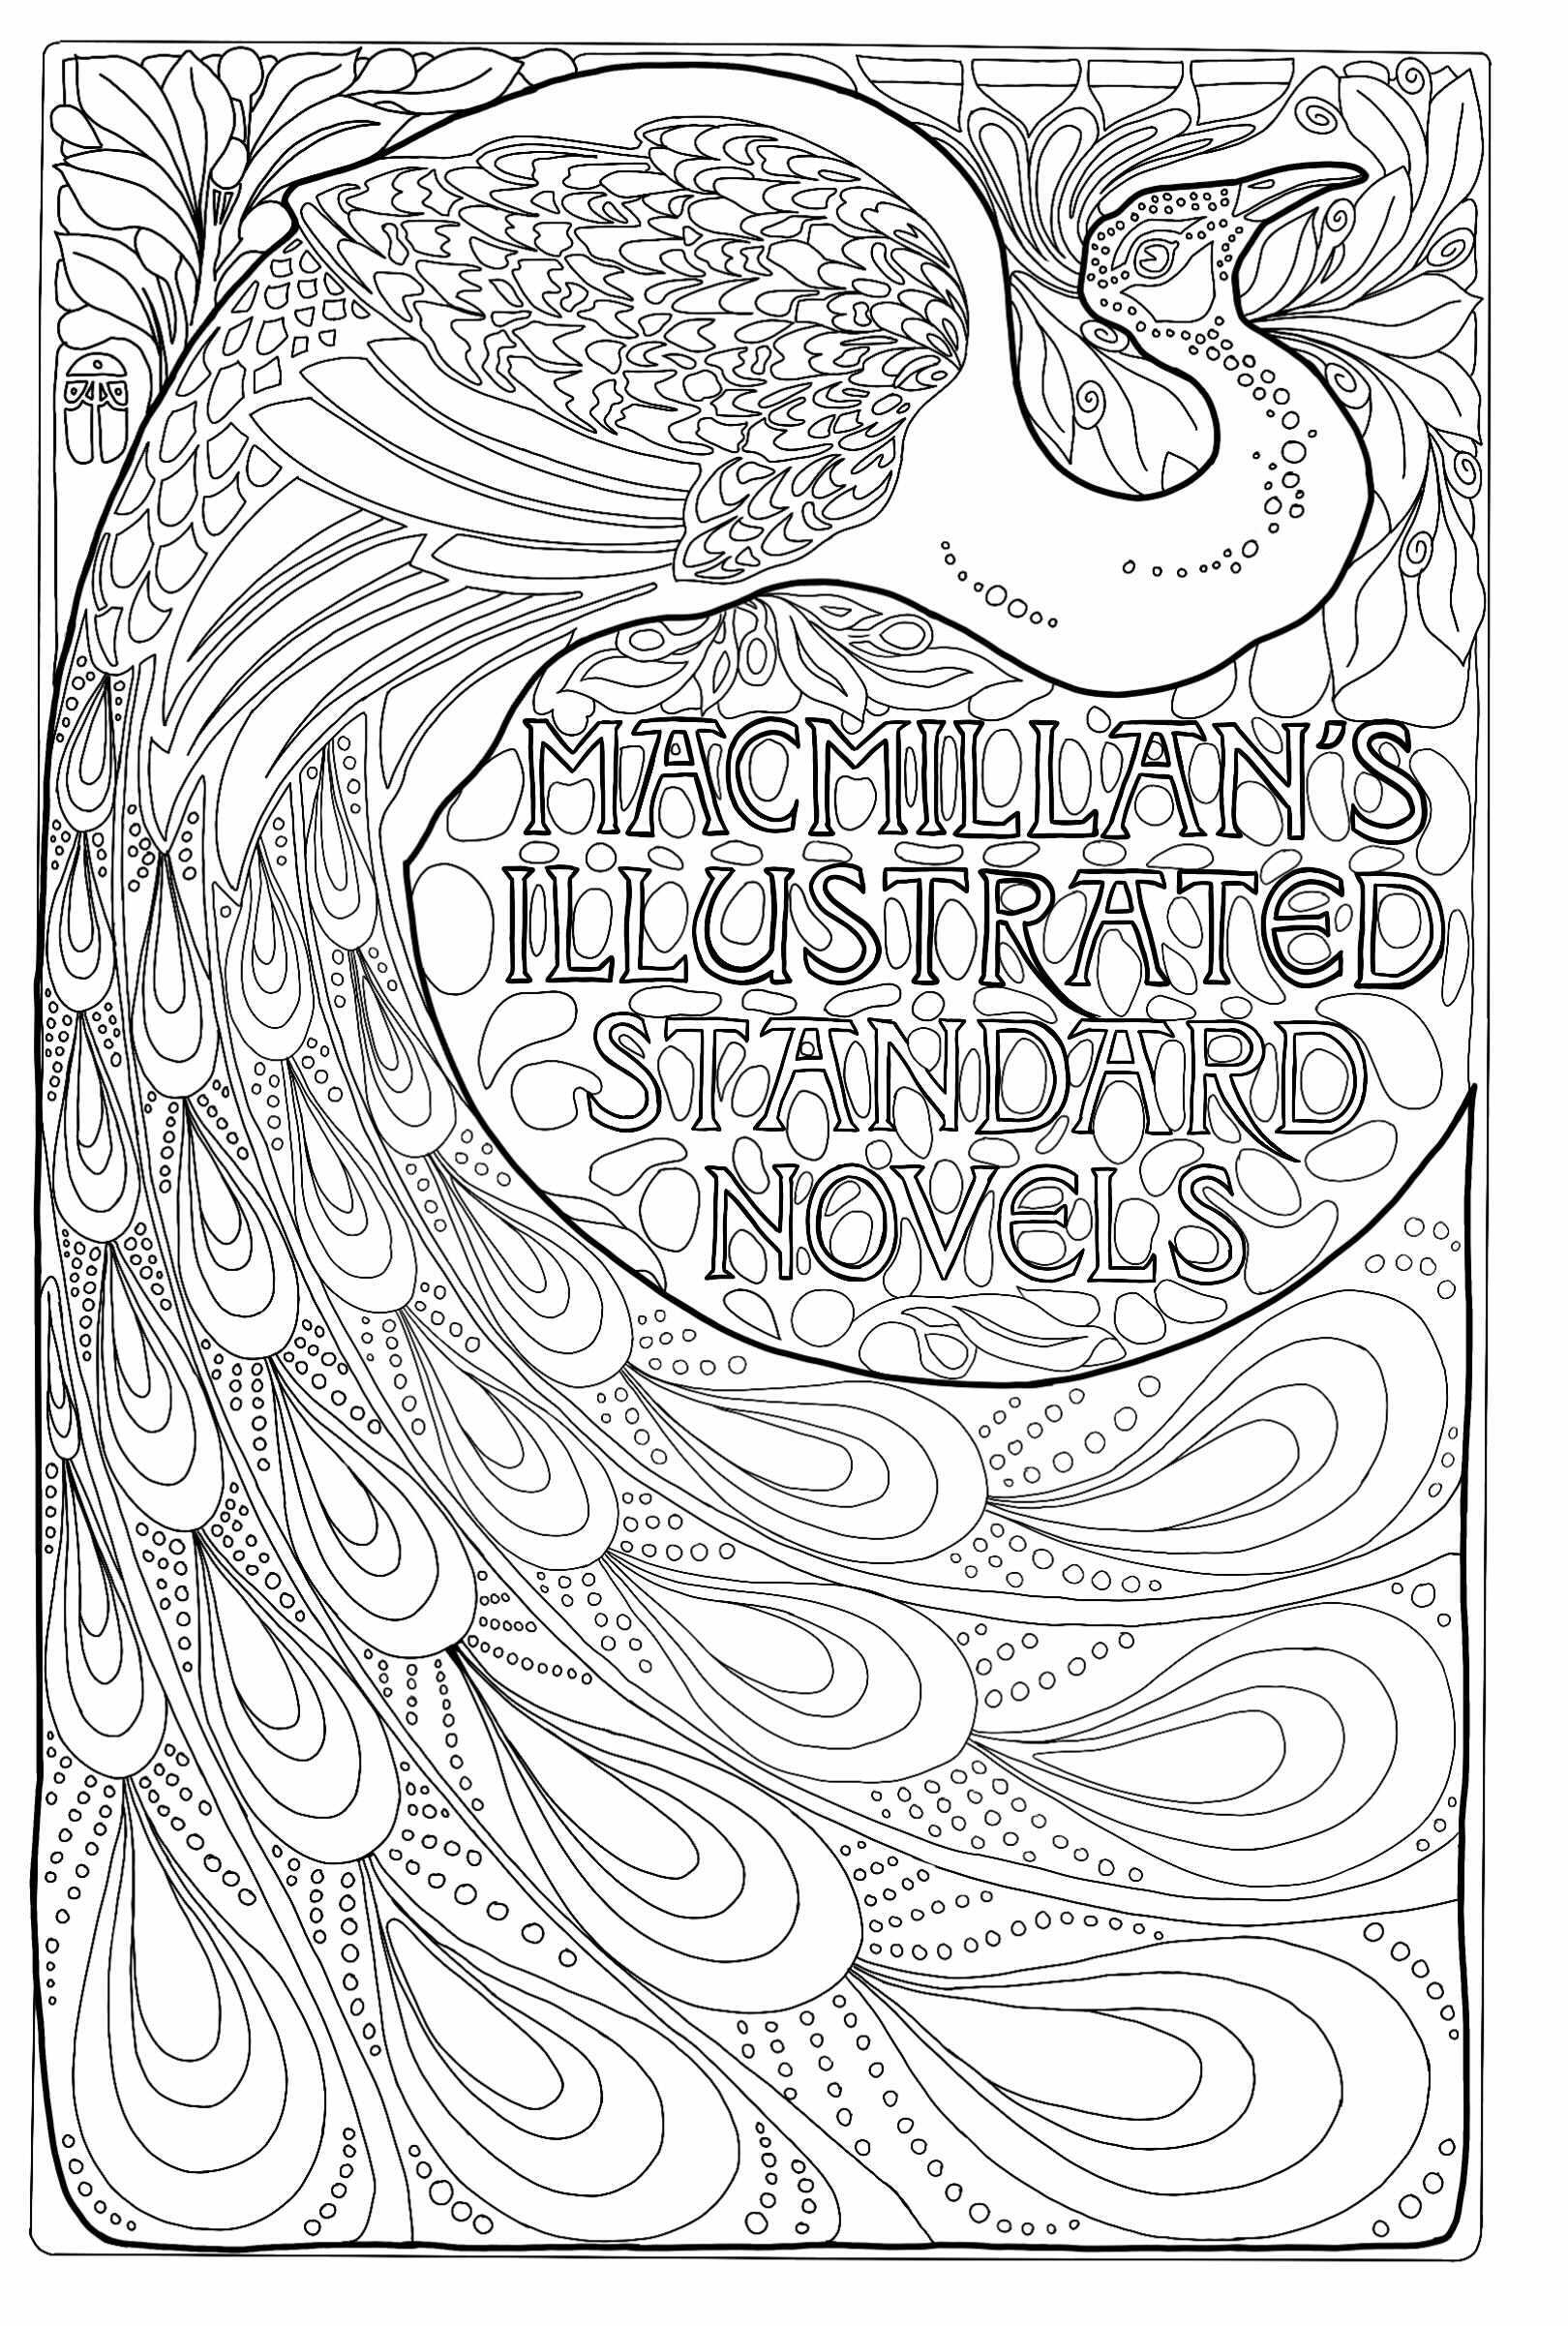 Portada de libro Art Nouveau con un pavo real (1896). Creado por Albert Angus Turbayne (3 de mayo de 1866 - 29 de abril de 1940). Fue un diseñador de libros y encuadernador estadounidense.